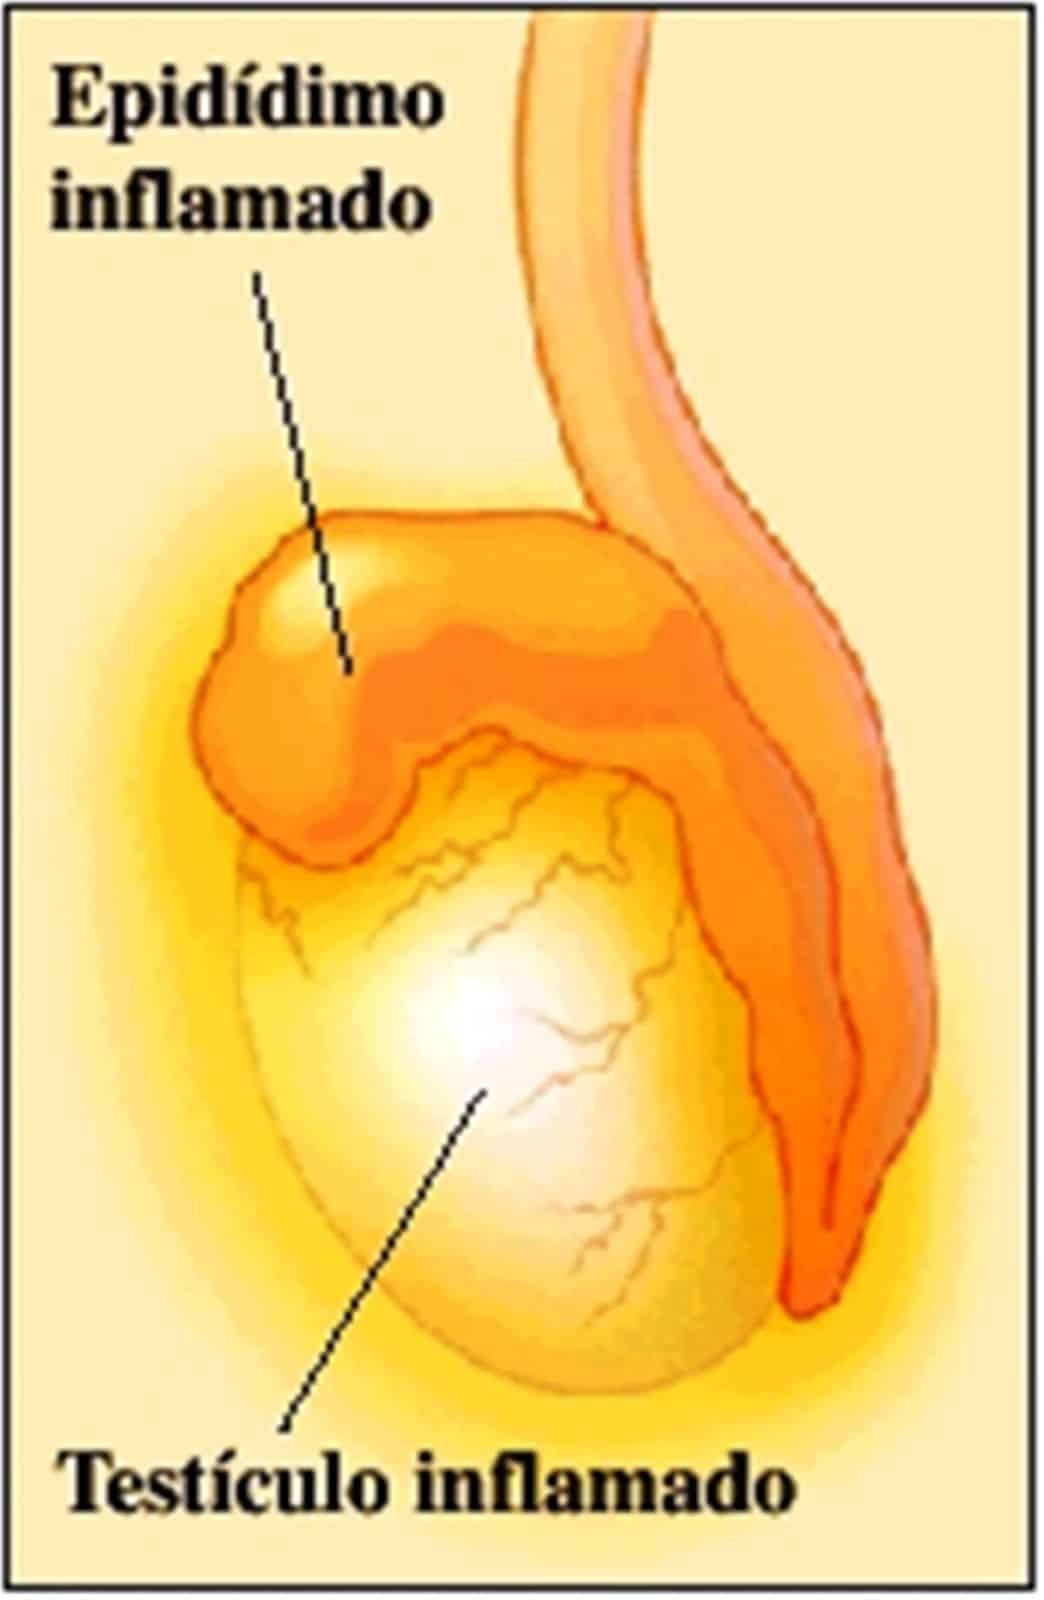 La orquiepididimitis conlleva la inflamación de testículos y epidídimo